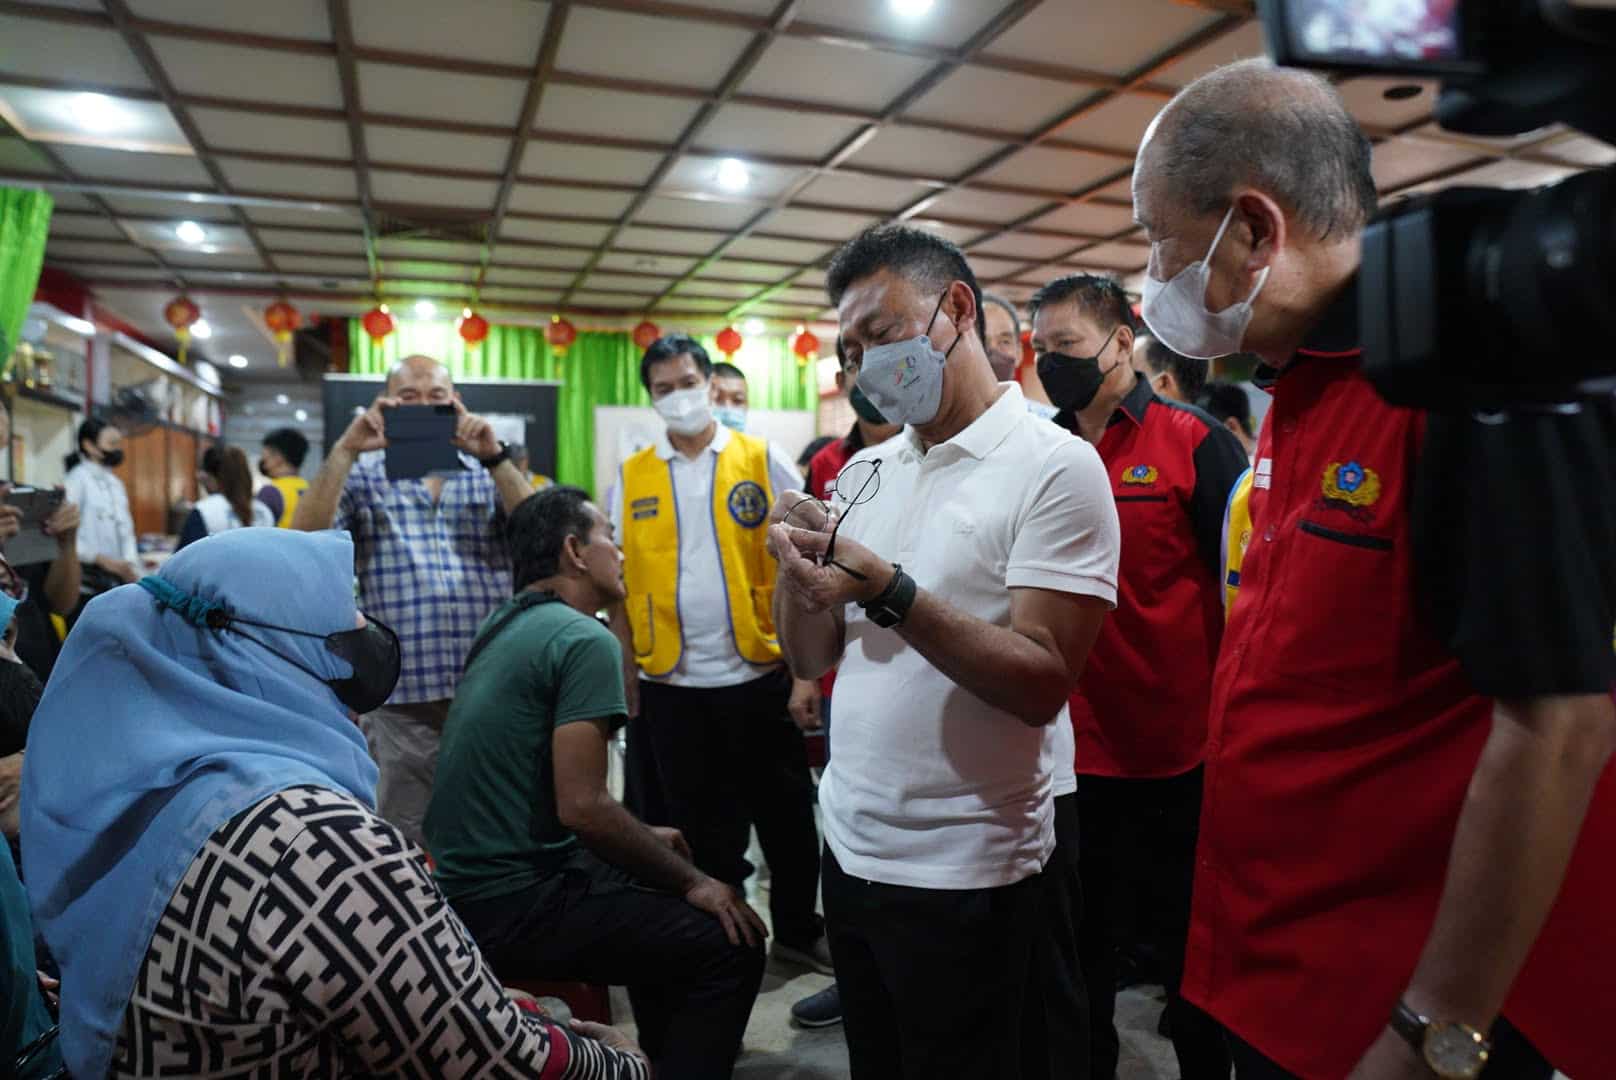 Wali Kota Pontianak, Edi Rusdi Kamtono meninjau pemeriksaan mata dan pemberian kacamata gratis bagi petugas kebersihan di Yayasan Bhakti Suci. (Foto: Prokopim For KalbarOnline.com)